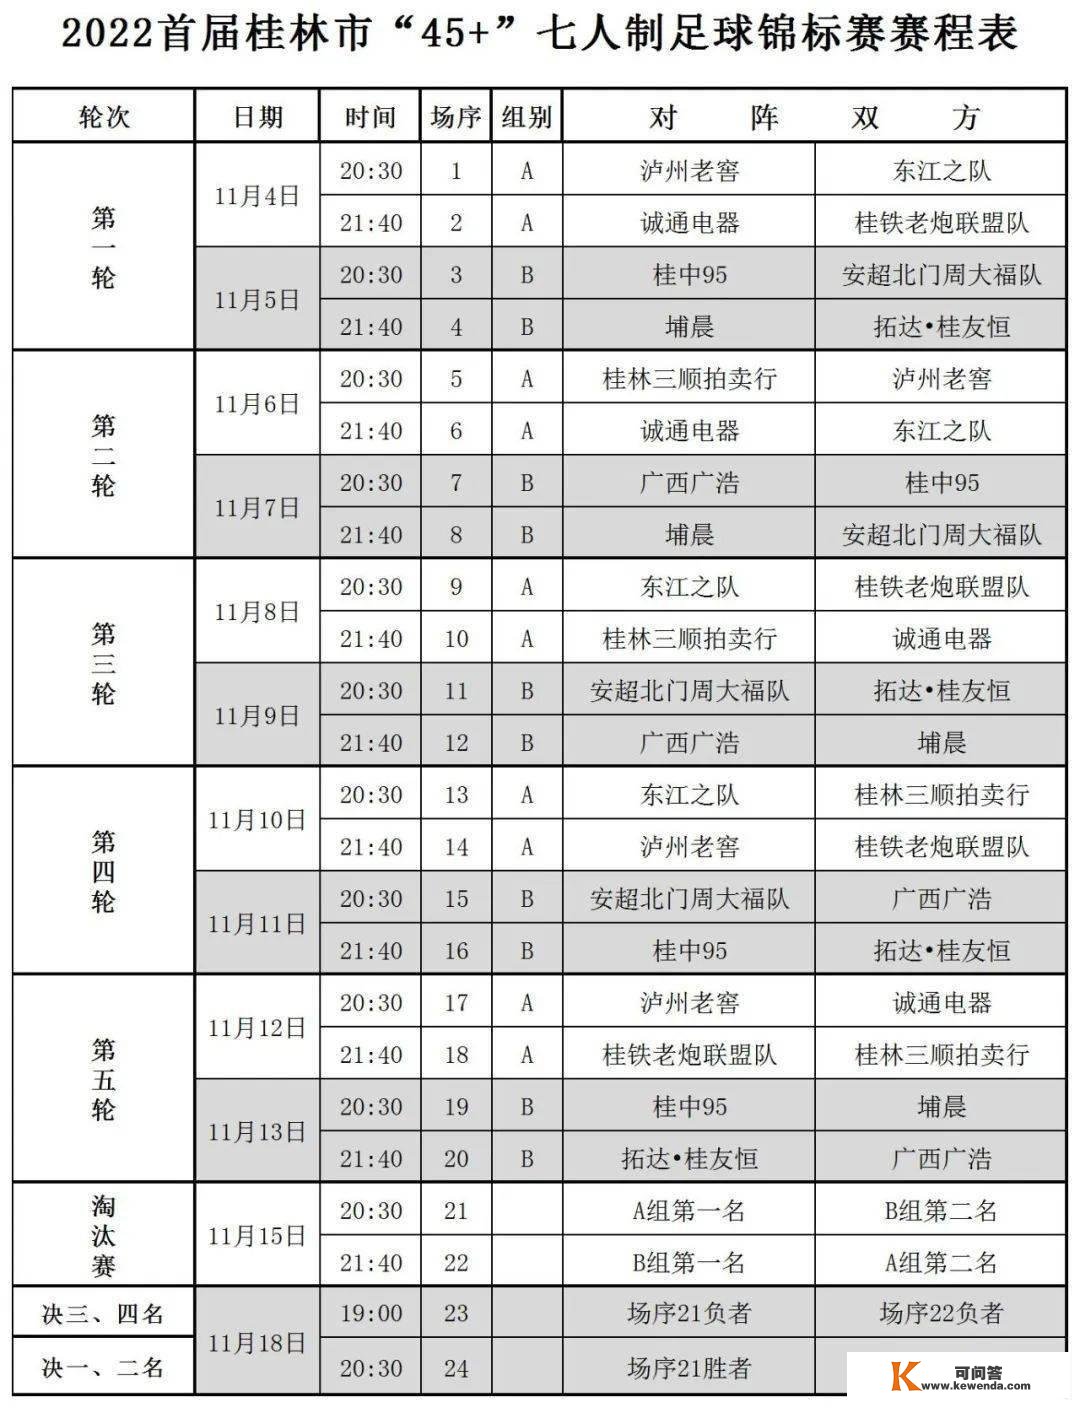 【赛程出炉】2022首届桂林市“45+”七人造足球锦标赛赛程出炉